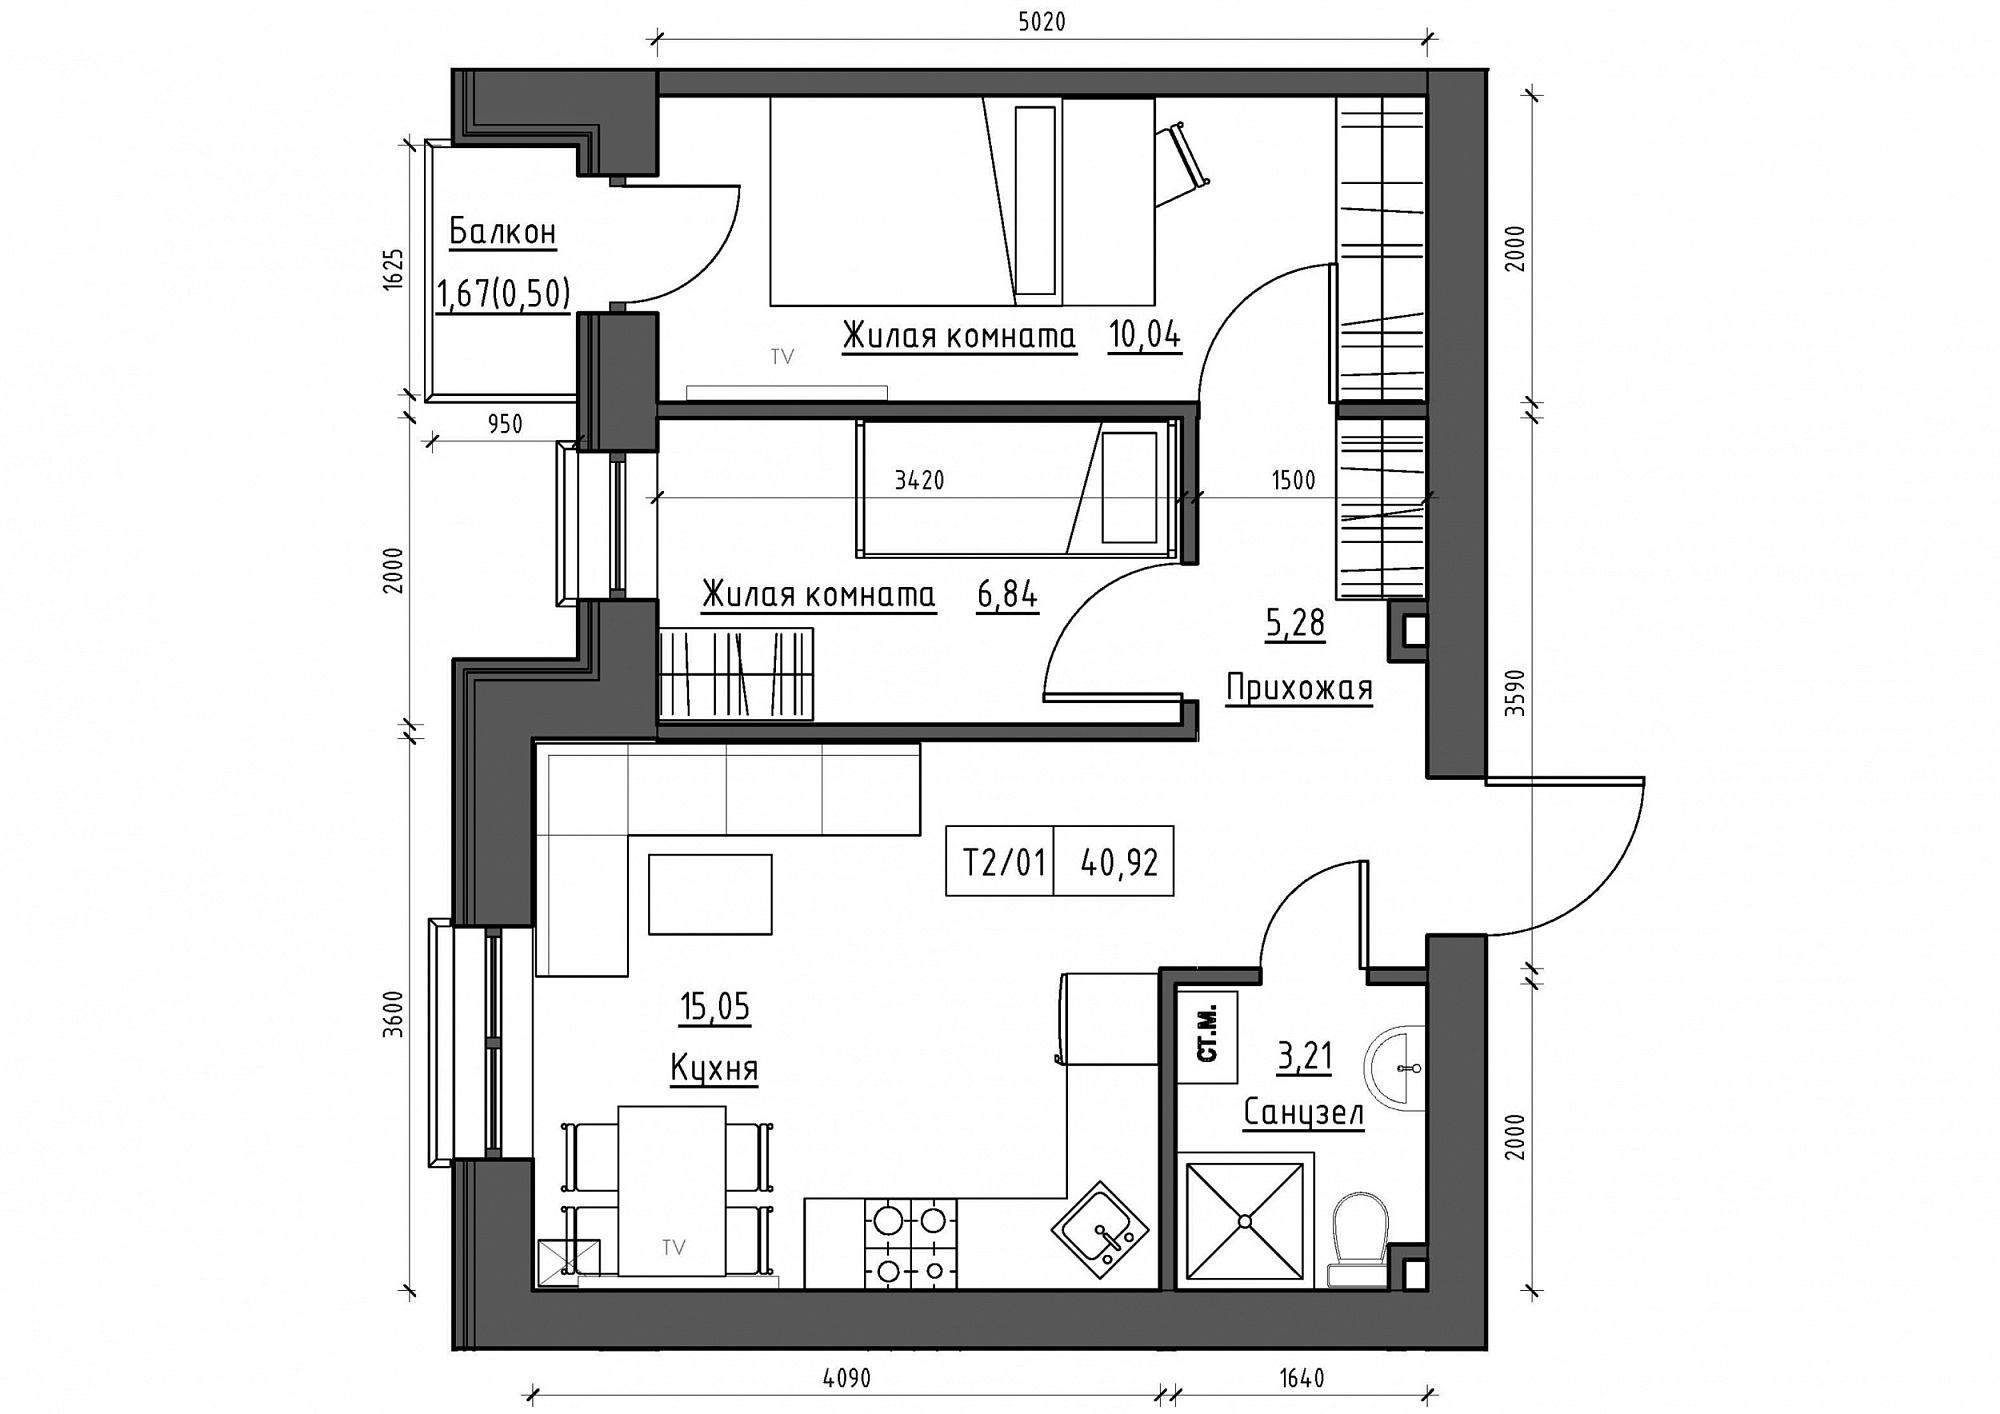 Планування 2-к квартира площею 40.92м2, KS-012-03/0010.